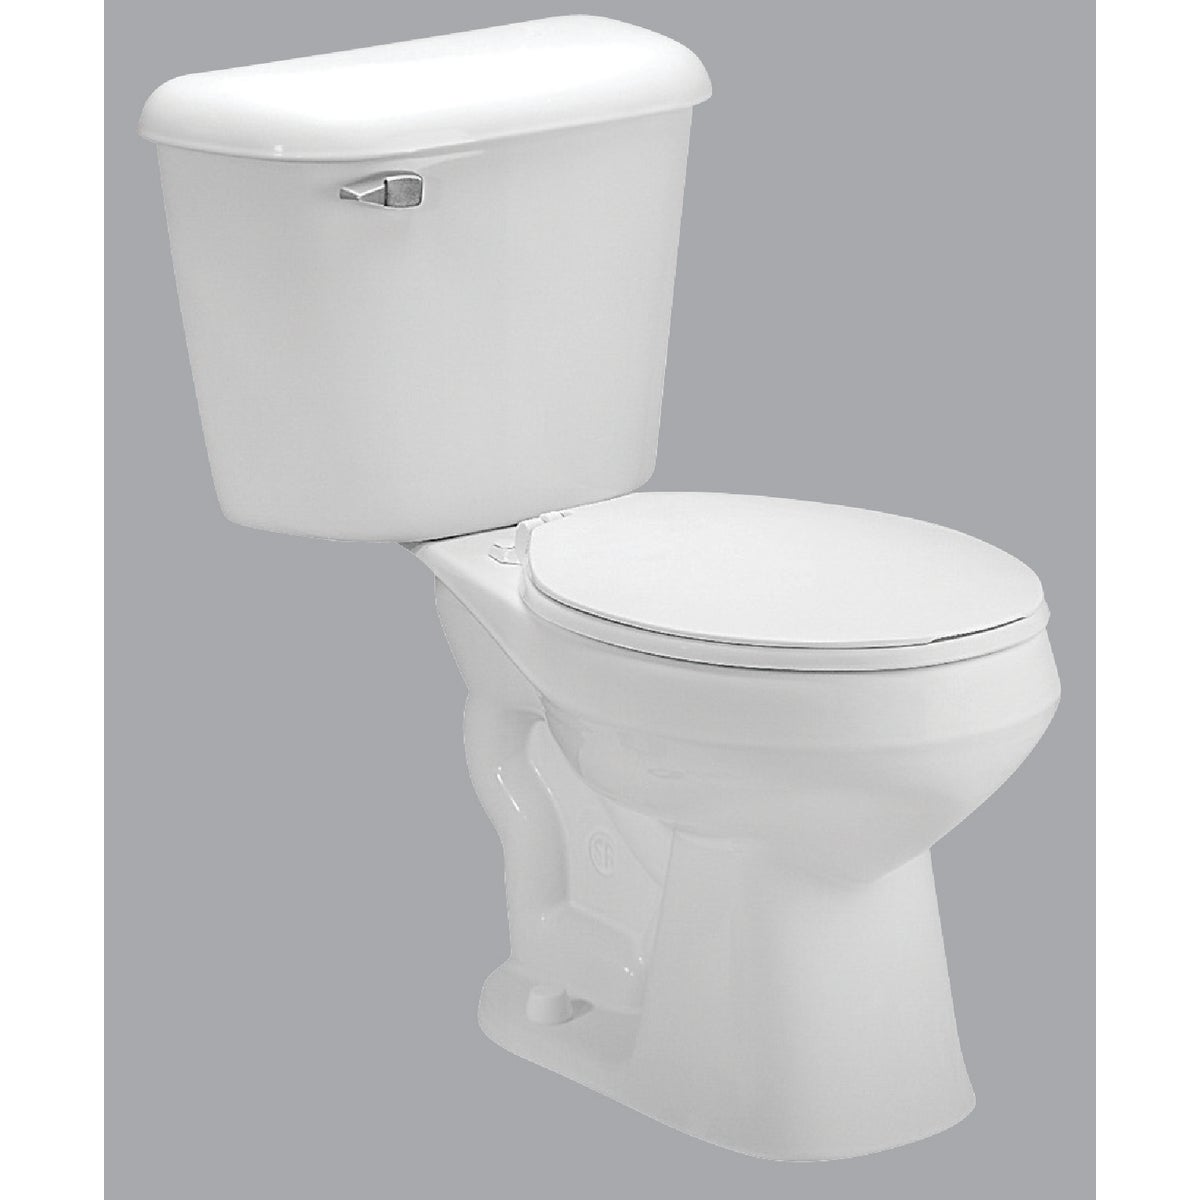 Item 490288, Pro-Fit 1 complete toilet kit. 1.6 GPF (gallons per flush)/6.